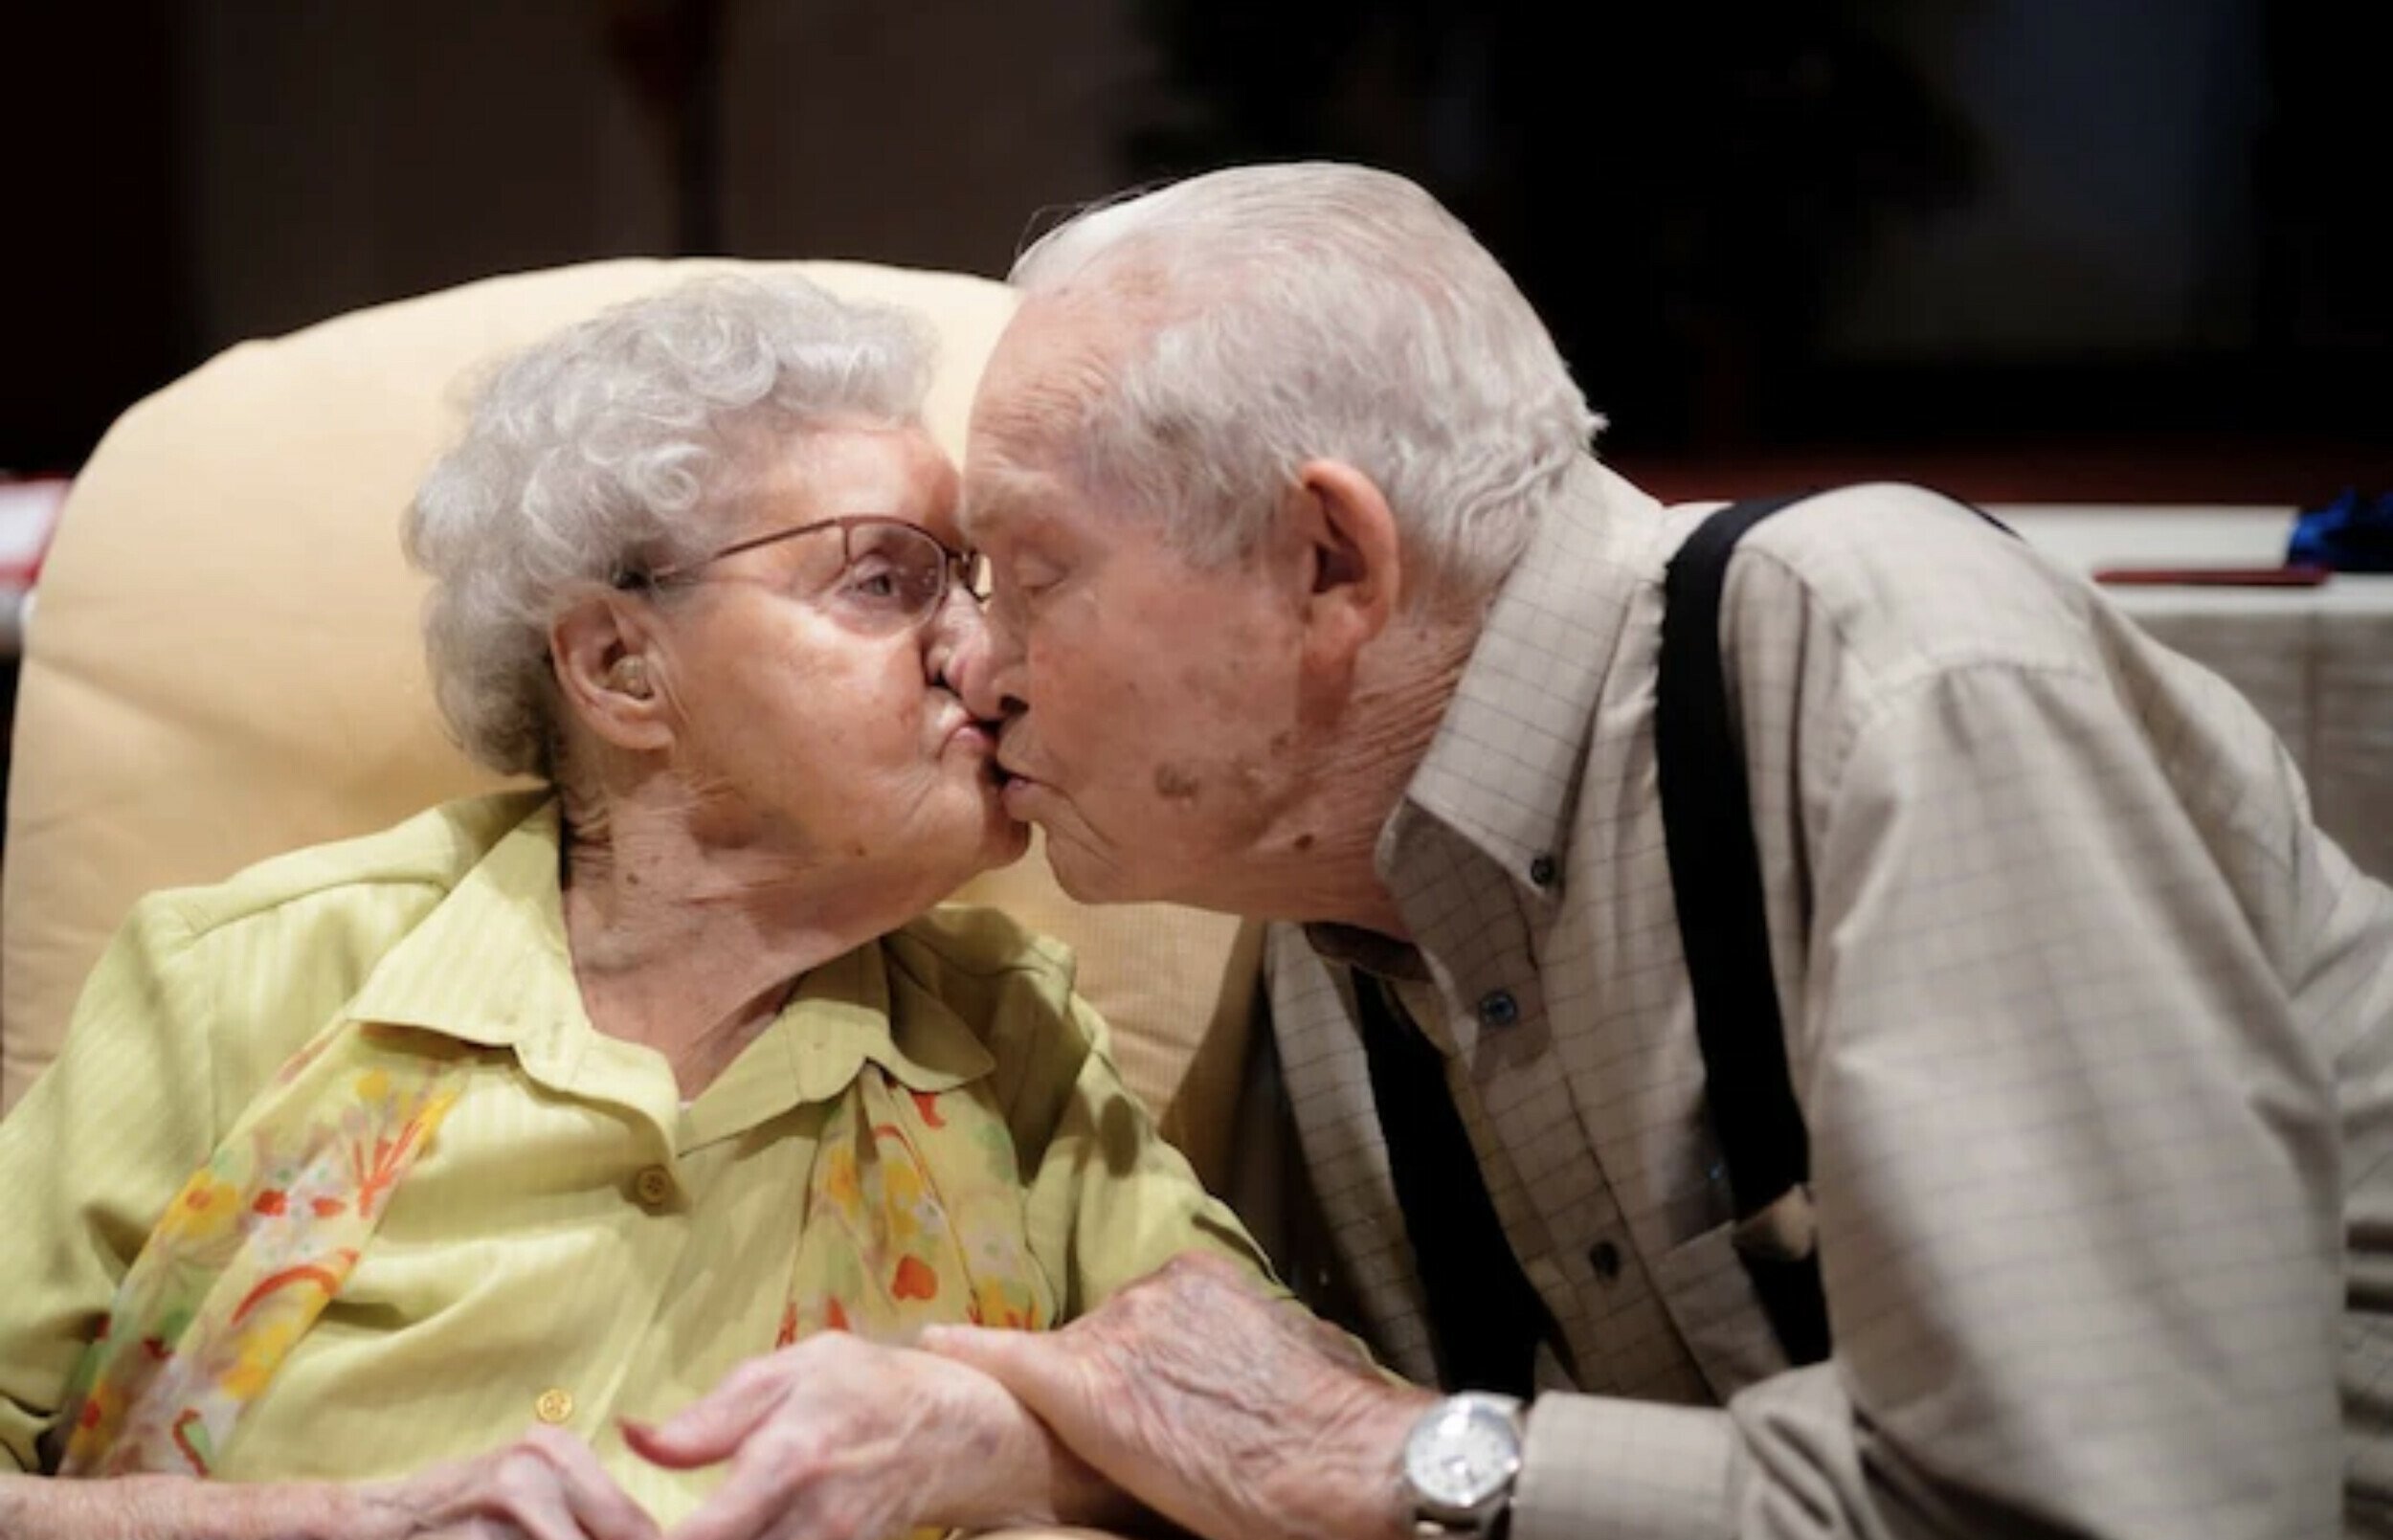 Ανδρόγυνο, 100 χρόνων, πεθαίνει με διαφορά ωρών μετά από 79 χρόνια γάμου